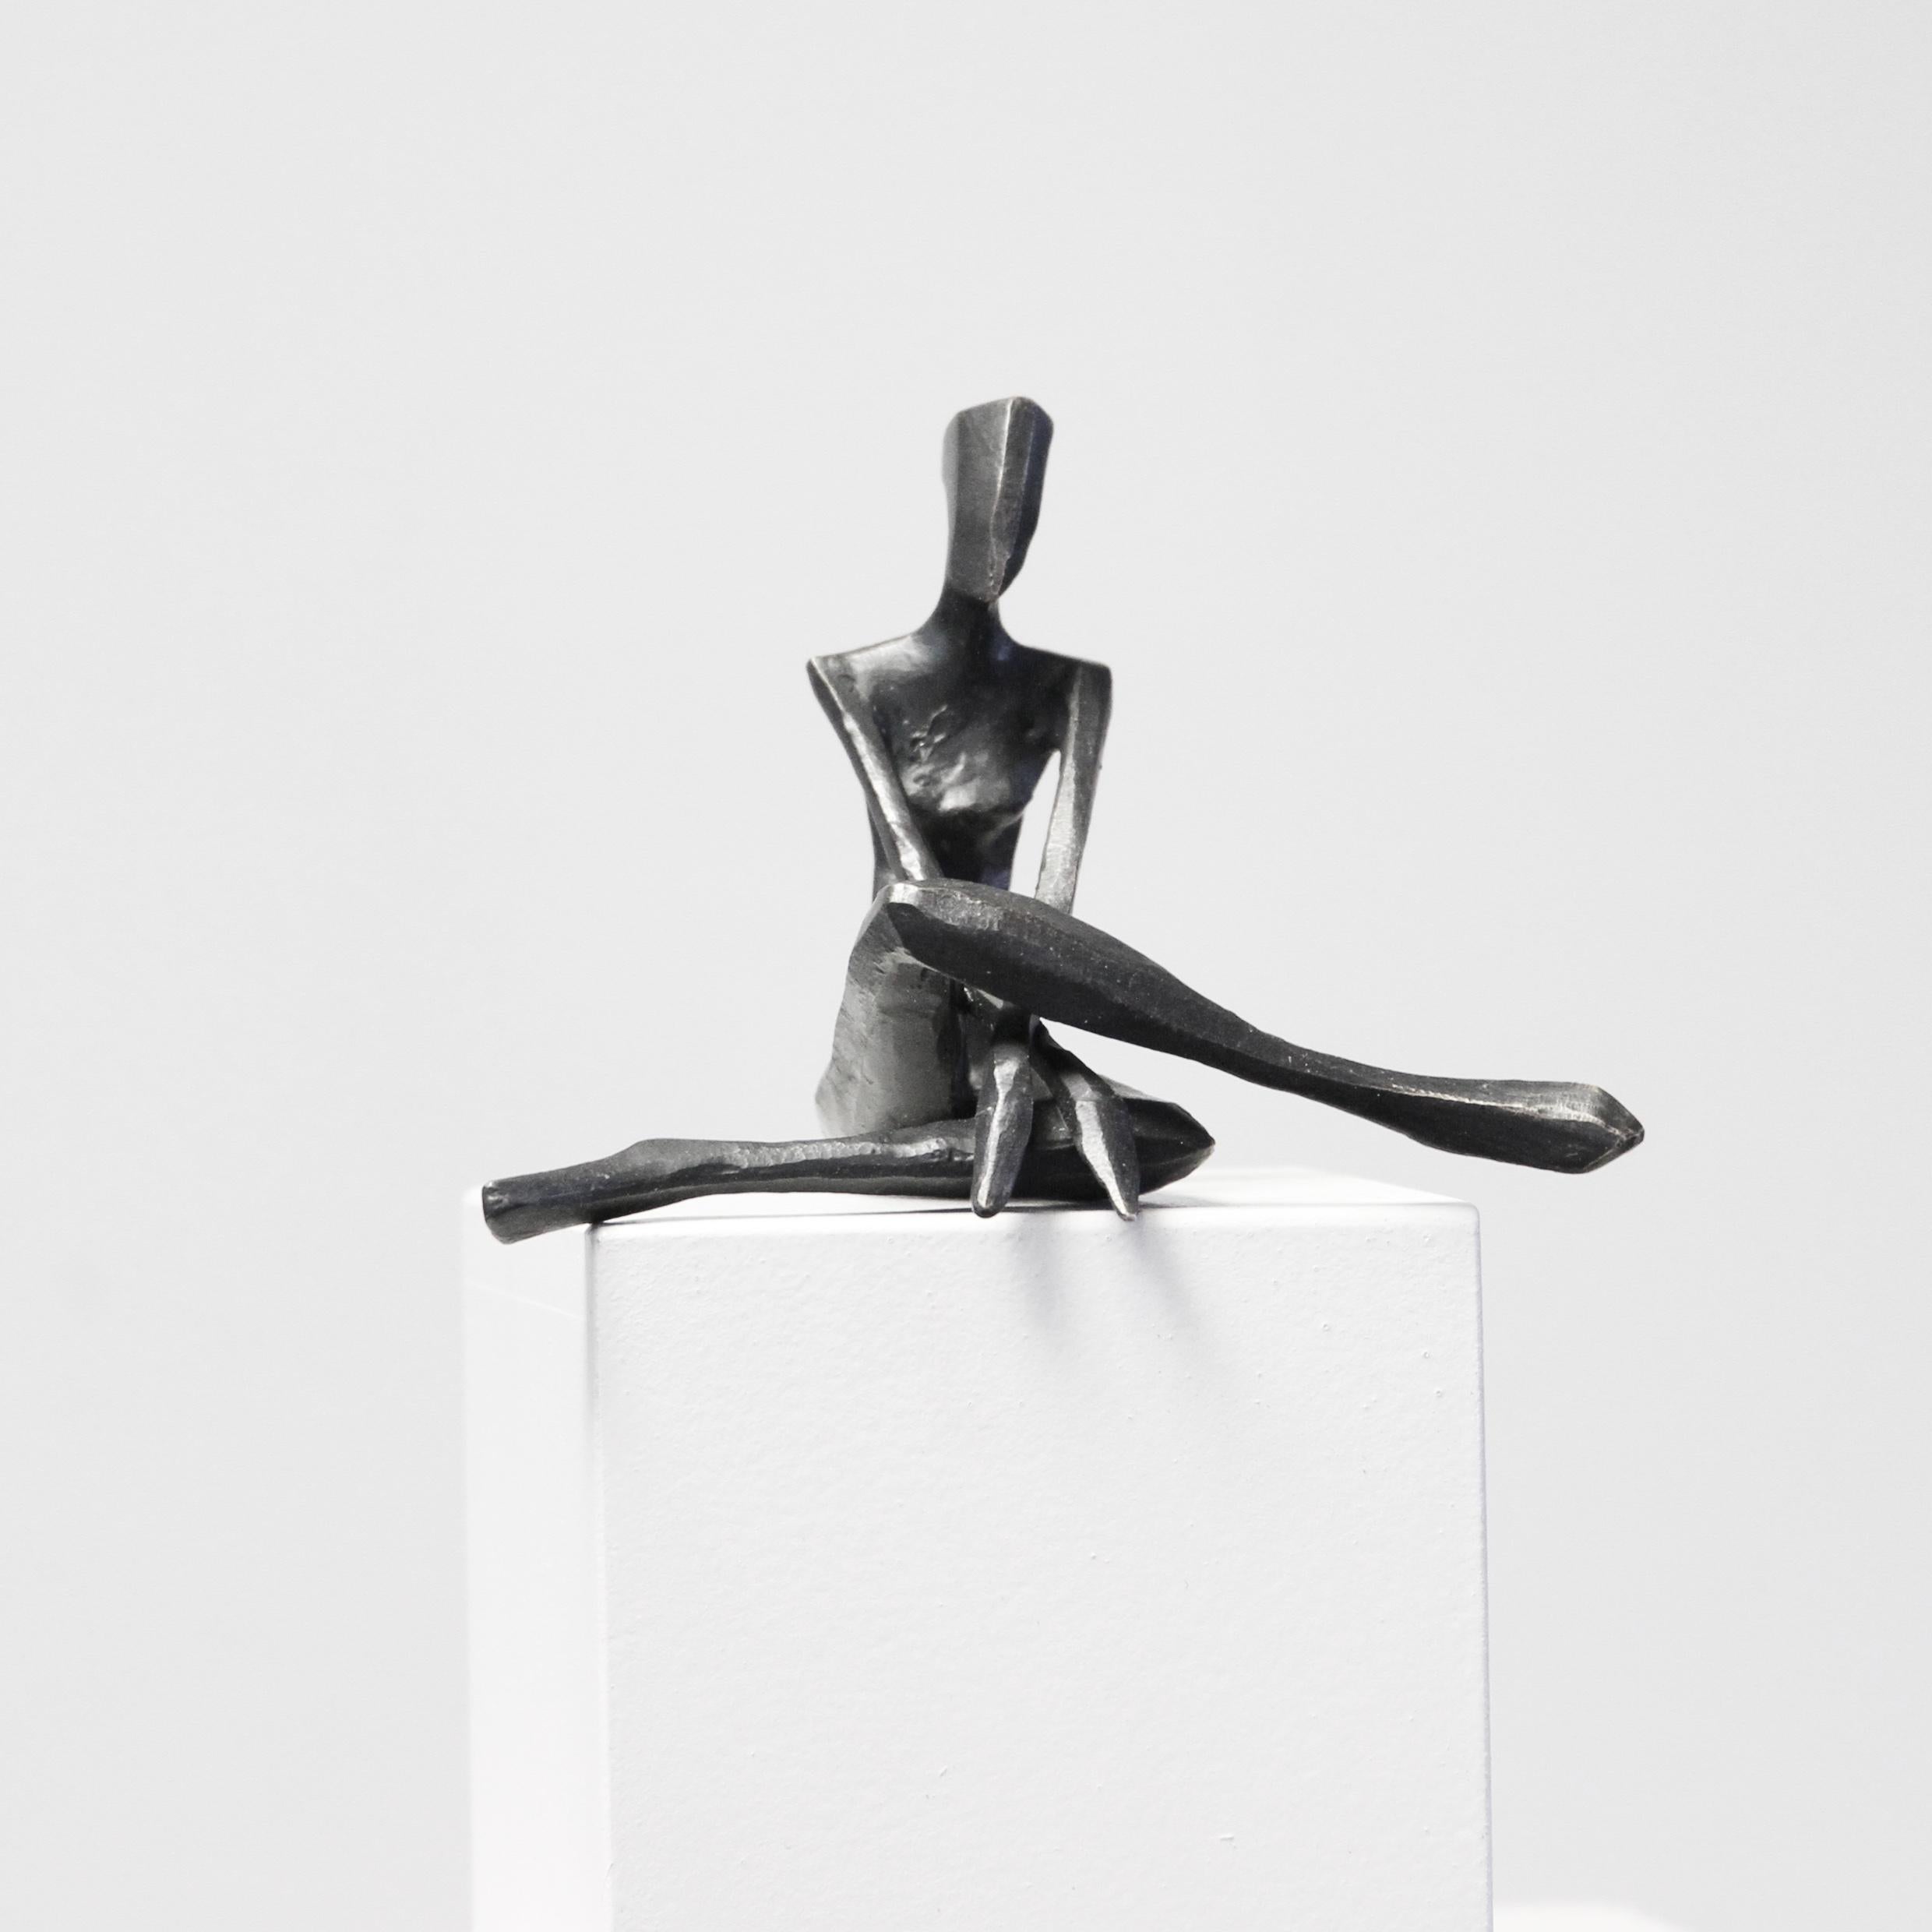 Ruby ist eine figurative Bronzeskulptur in entspannter Pose von Nando Kallweit.

Der stilisierte ägyptisch angehauchte Kopf ist der modernen jugendlichen Haltung nachempfunden, verweist aber auch auf die Bedeutung des Erbes. Ein schönes Stück für